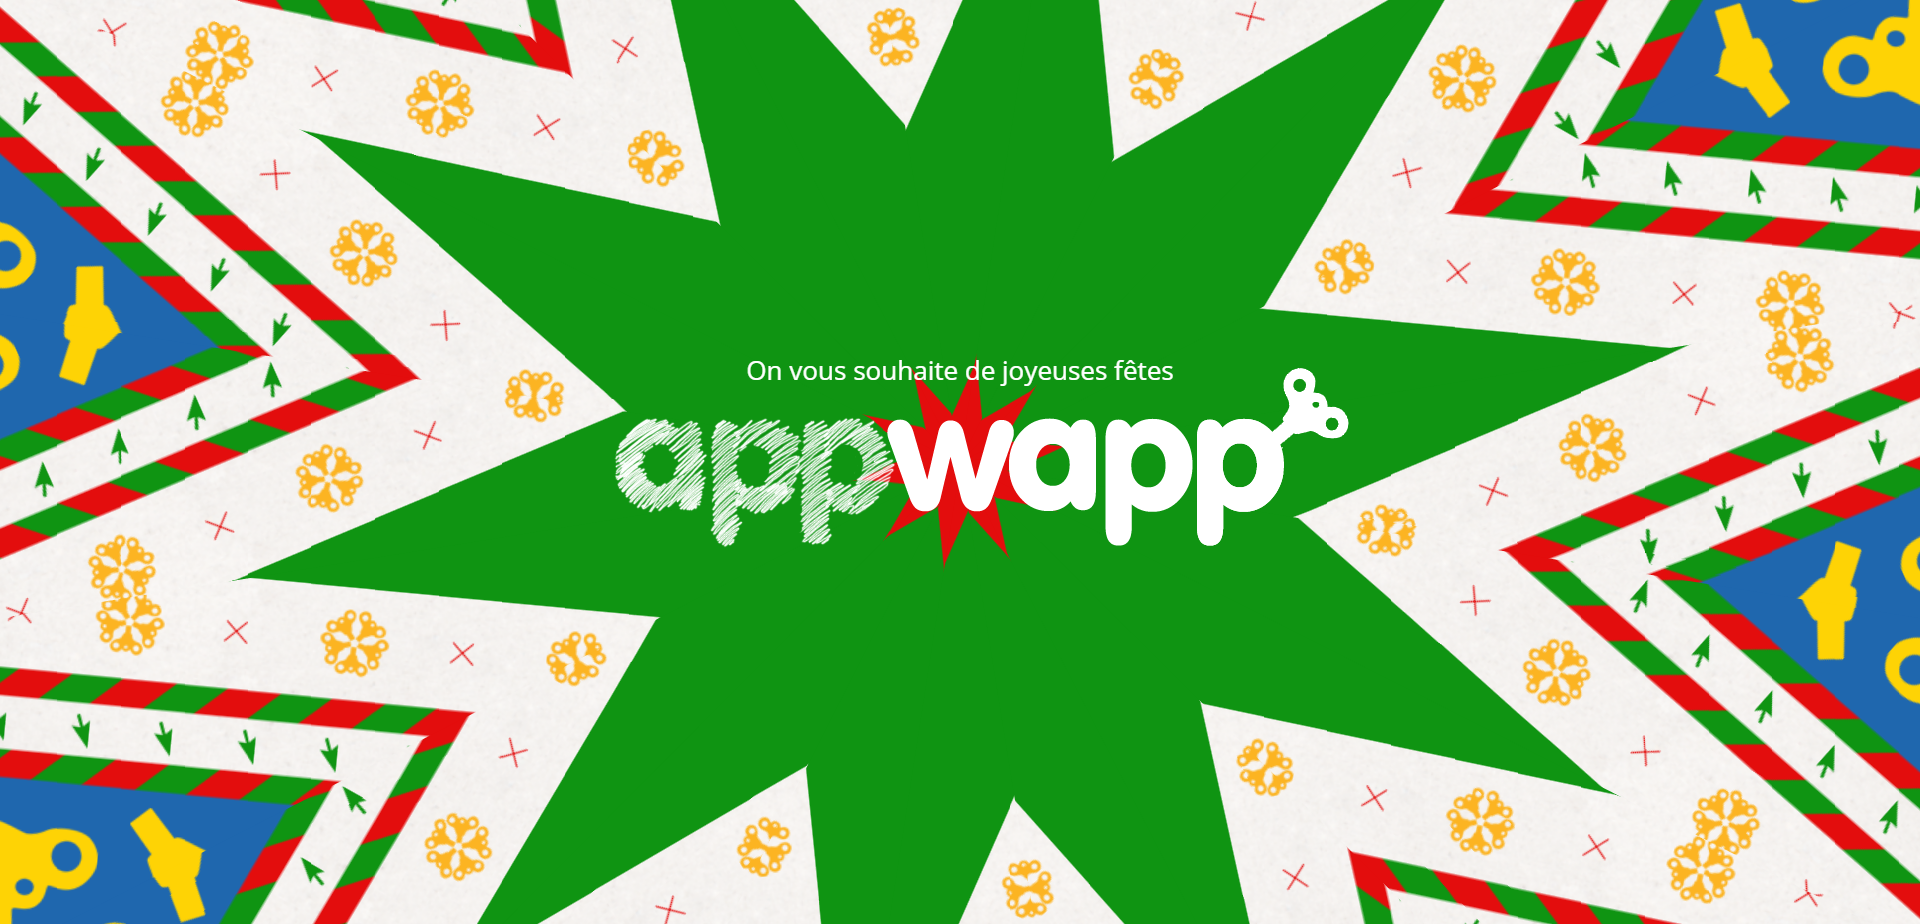 Appwapp - Carte de Noel 2016